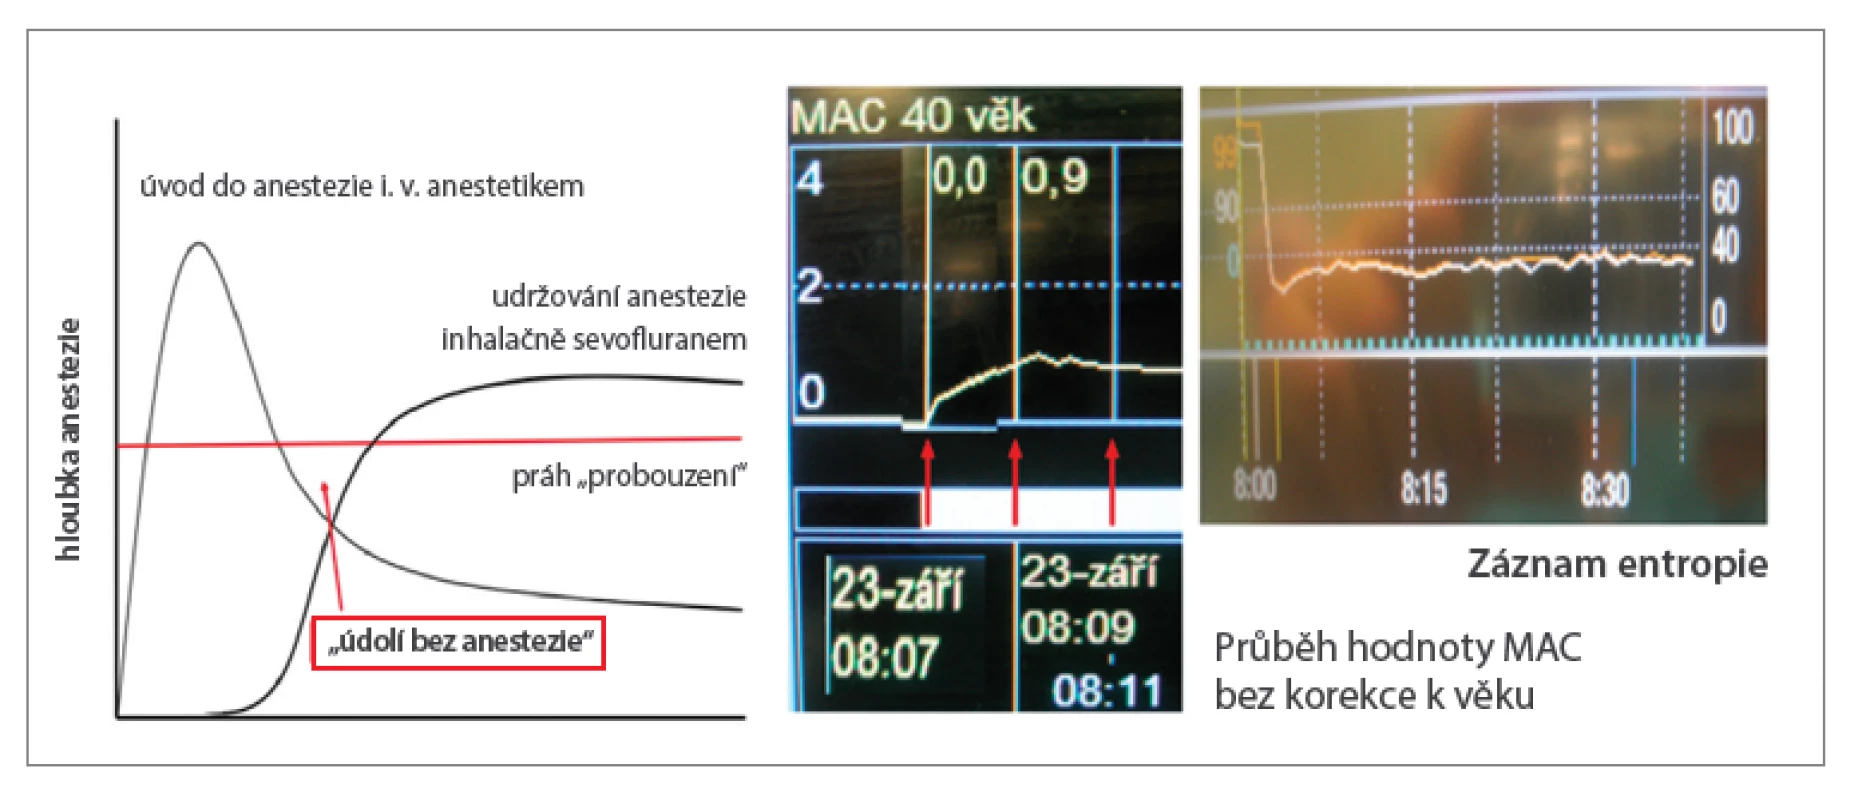 K „údolí bez anestezie“ nedochází ani při použití technik s nízkým FGF již od začátku anestezie,
jak dokumentuje skutečný záznam vzestupu MAC a průběhu entropie u 71letého pacienta s BMI 26,5 po
úvodu etomidátem a sufentanilem podstupujícího koronární revaskularizaci. Aplikace sevofluranu byla
zahájena bezprostředně po intubaci (rocuronium 1 mg/kg), odpařovač nastaven na 8 %, FGF 1 l/min,
FiO2 0,5. Hodnoty MAC 0,8 (chybně nekorigované podle věku) bylo dosaženo za 4 minuty).